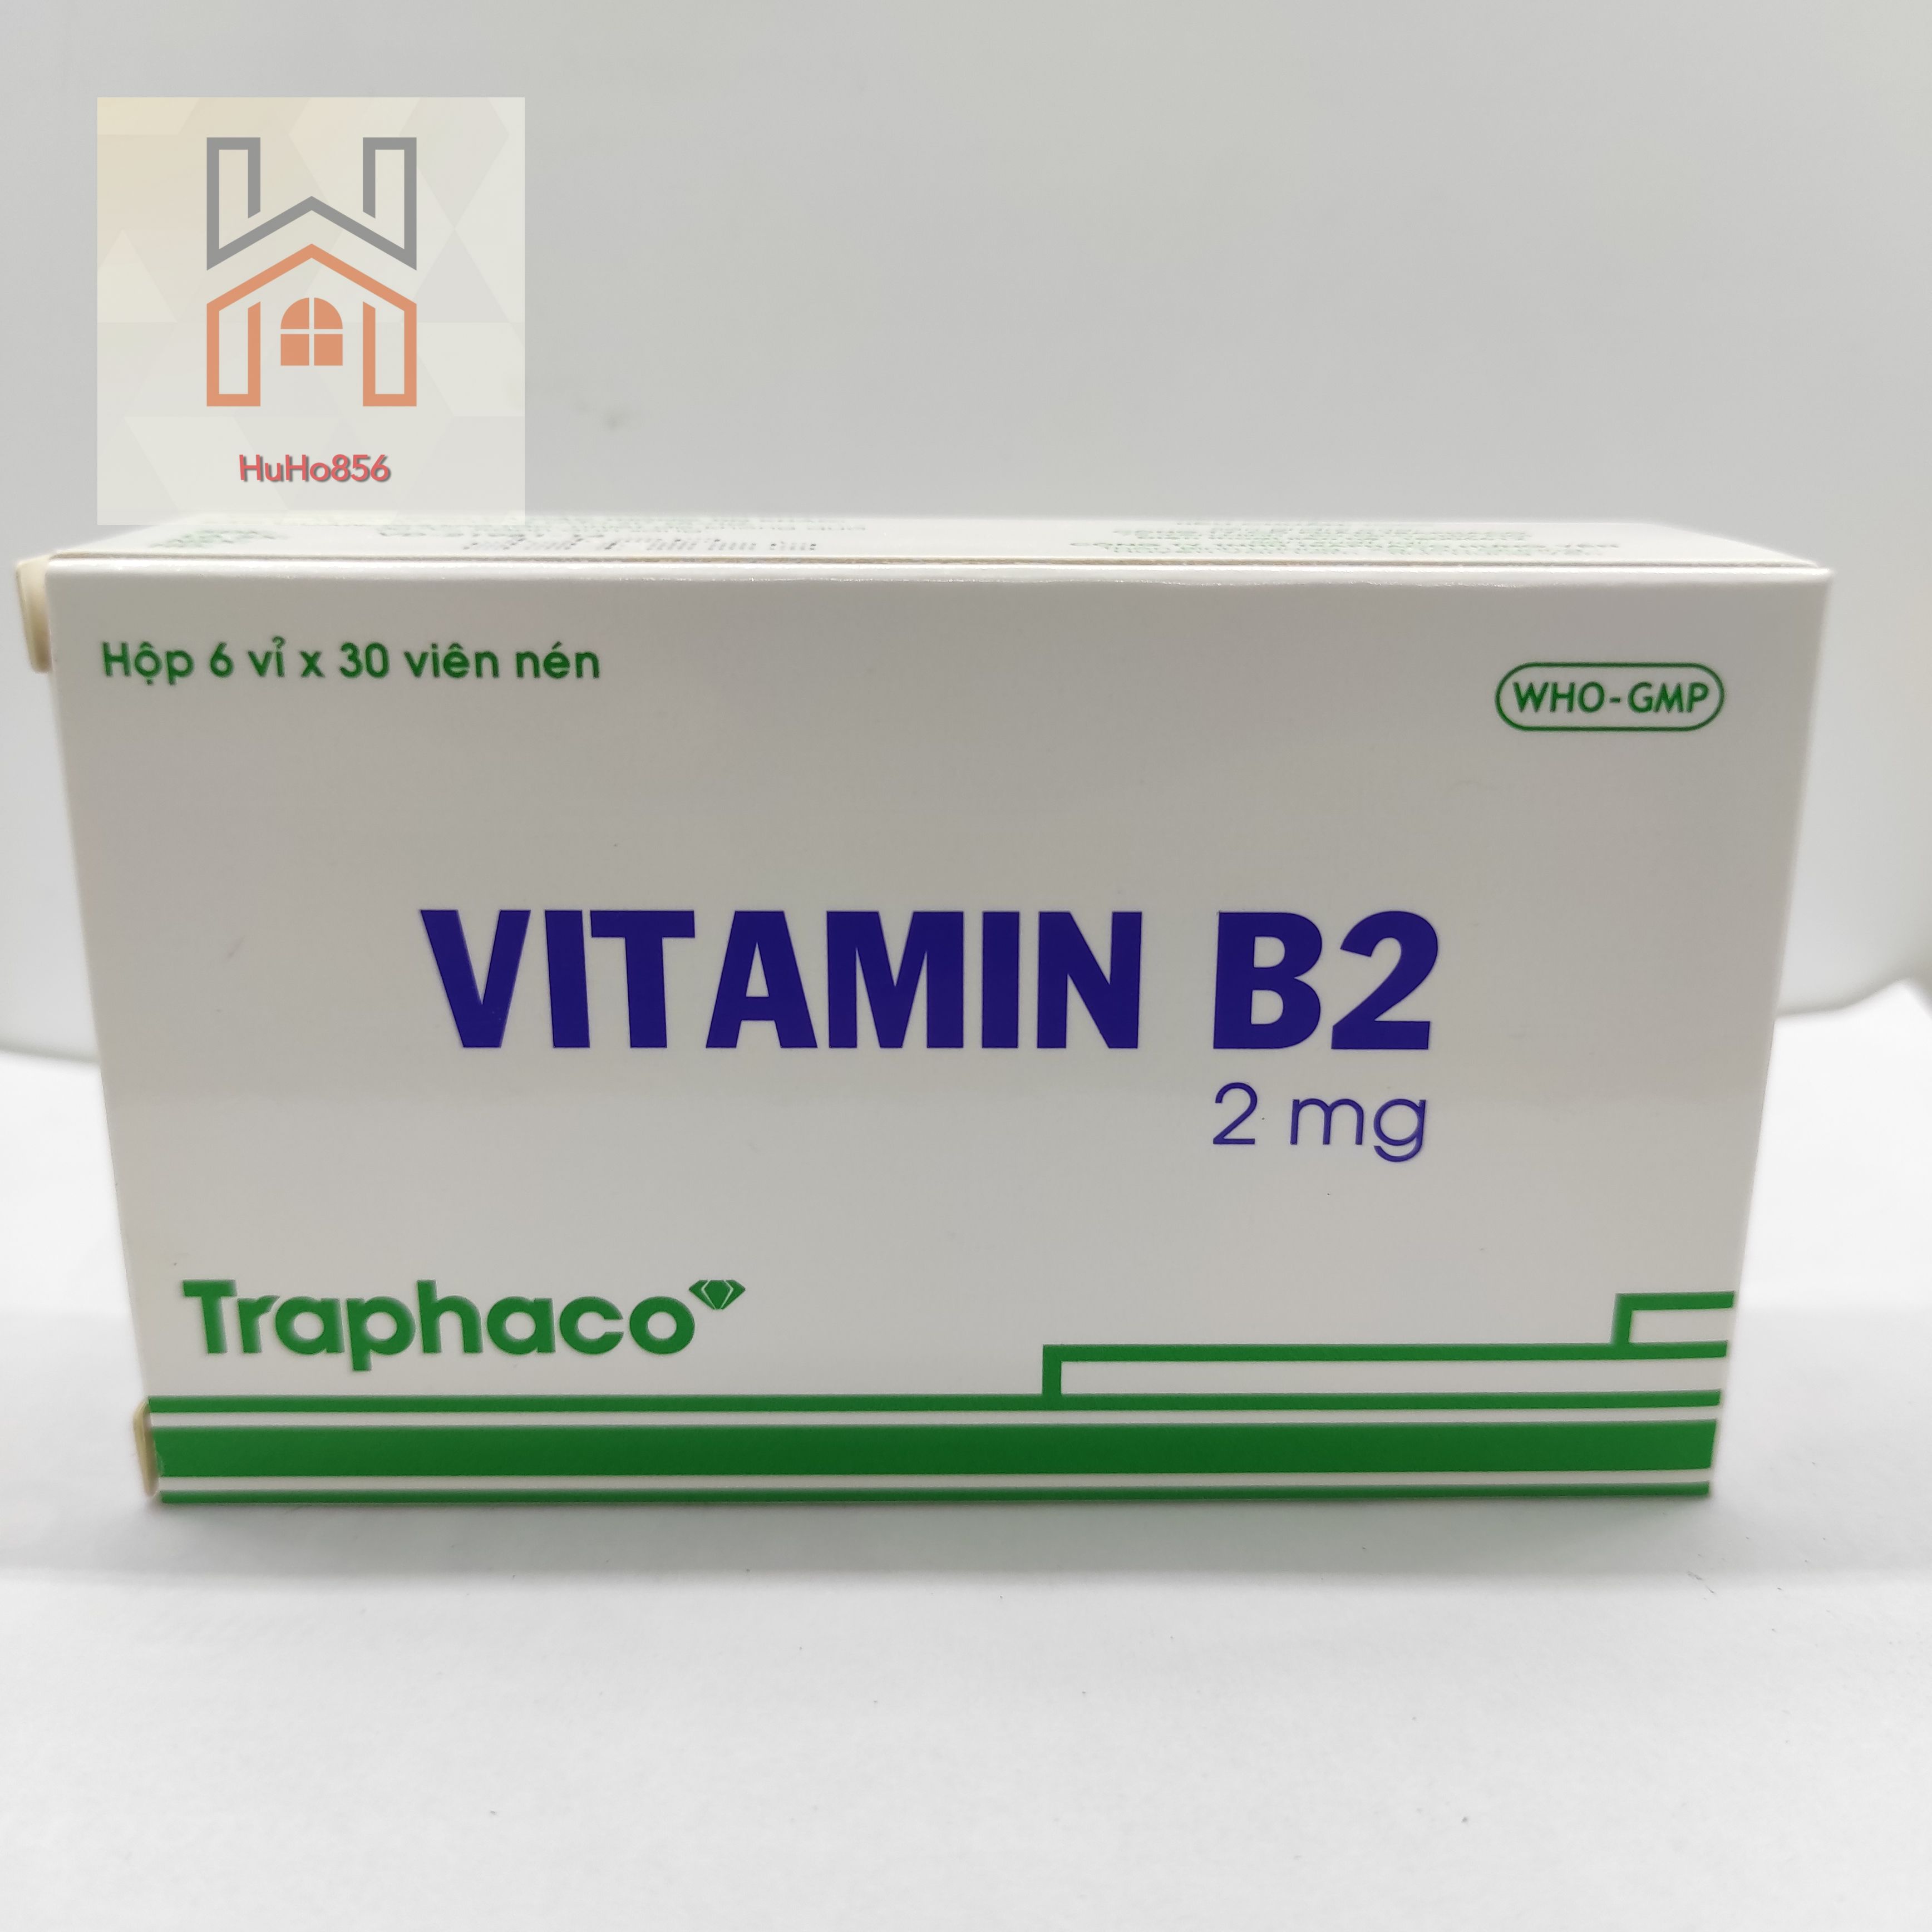 Vitamin B2 2mg Traphaco - Hộp 6 vỉ x 30 viên